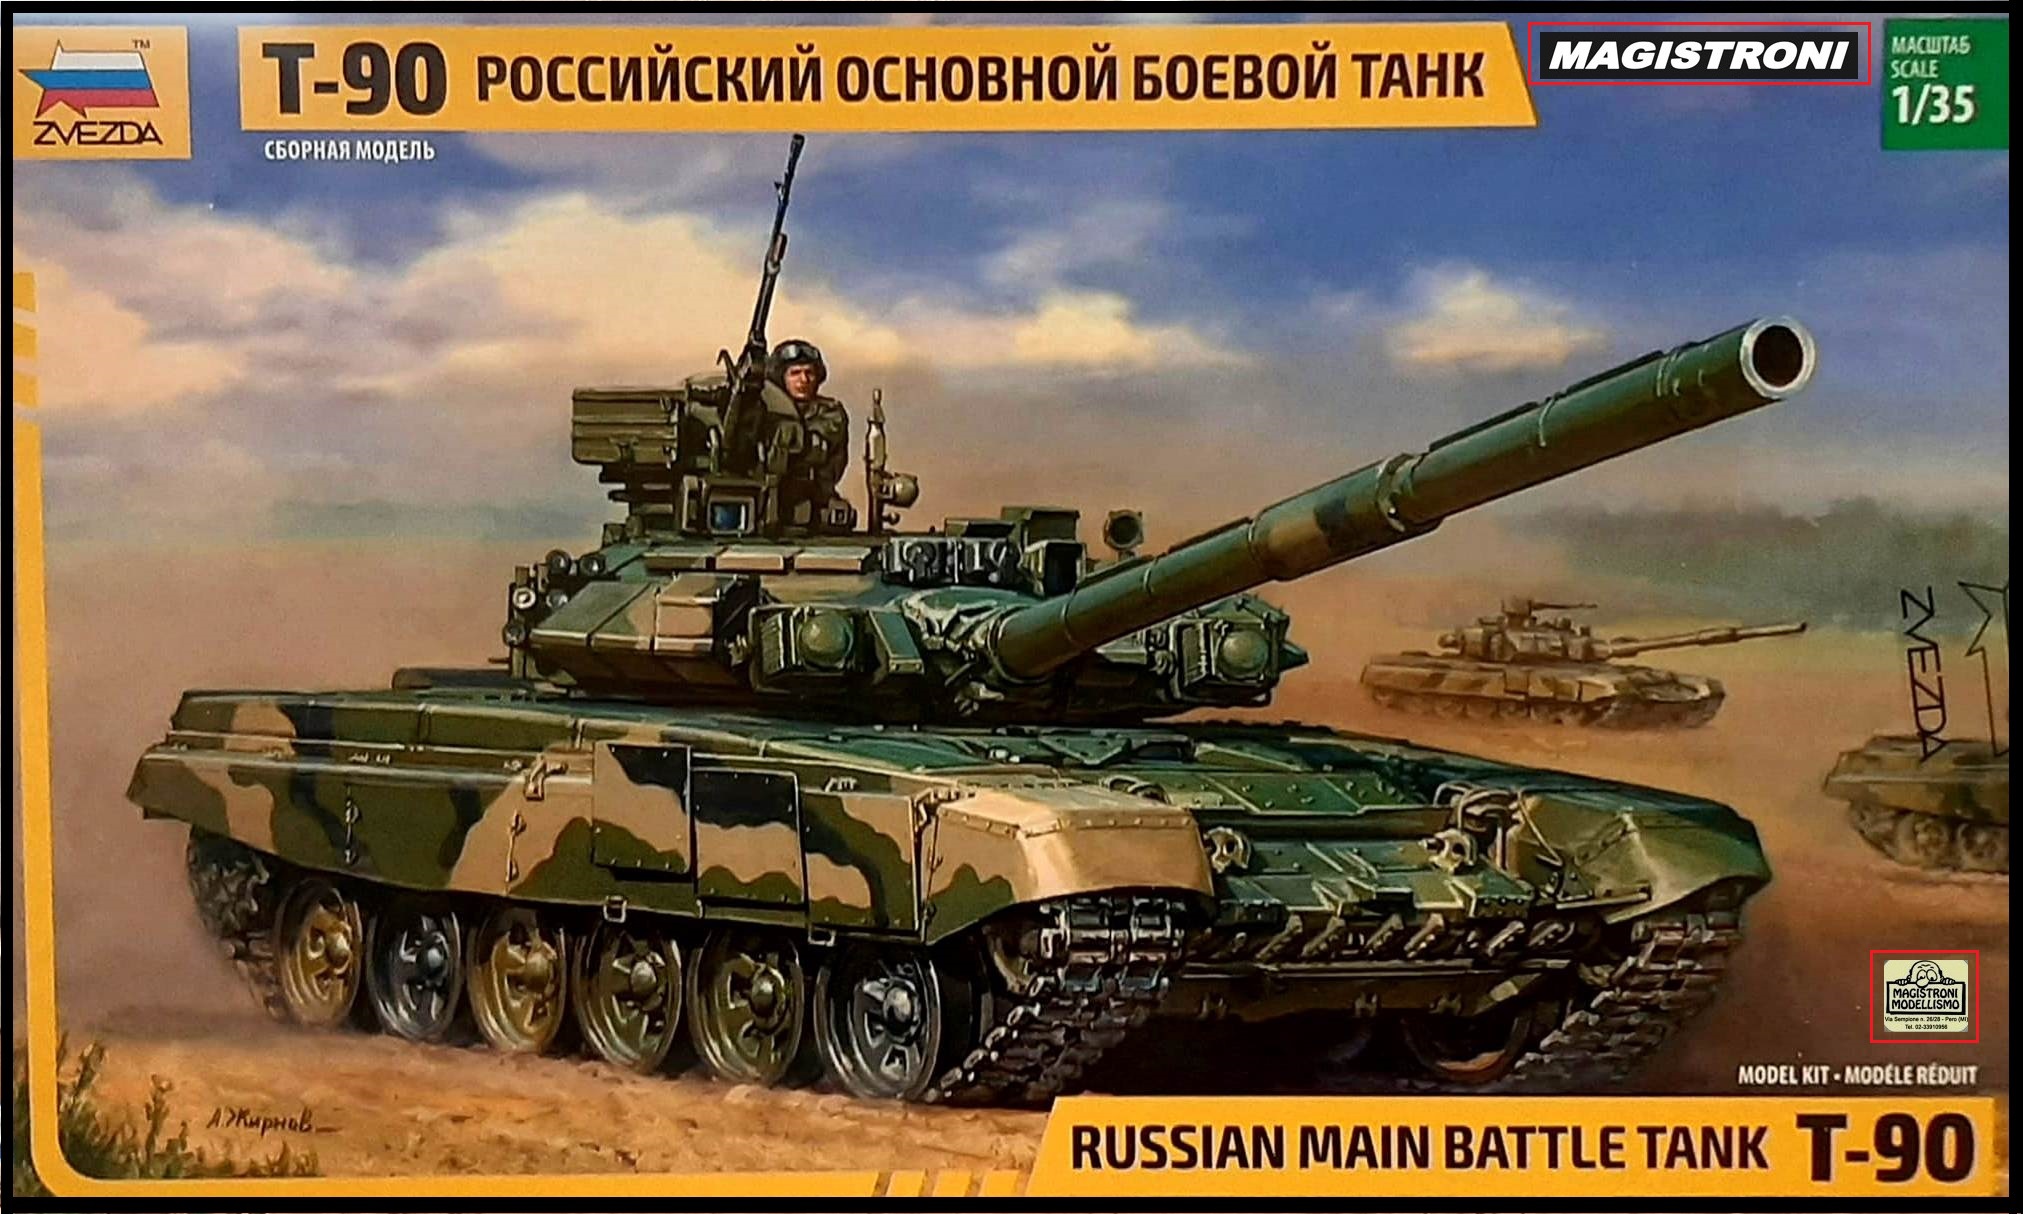 RUSSIA MAIN BATTLE TANK T-90